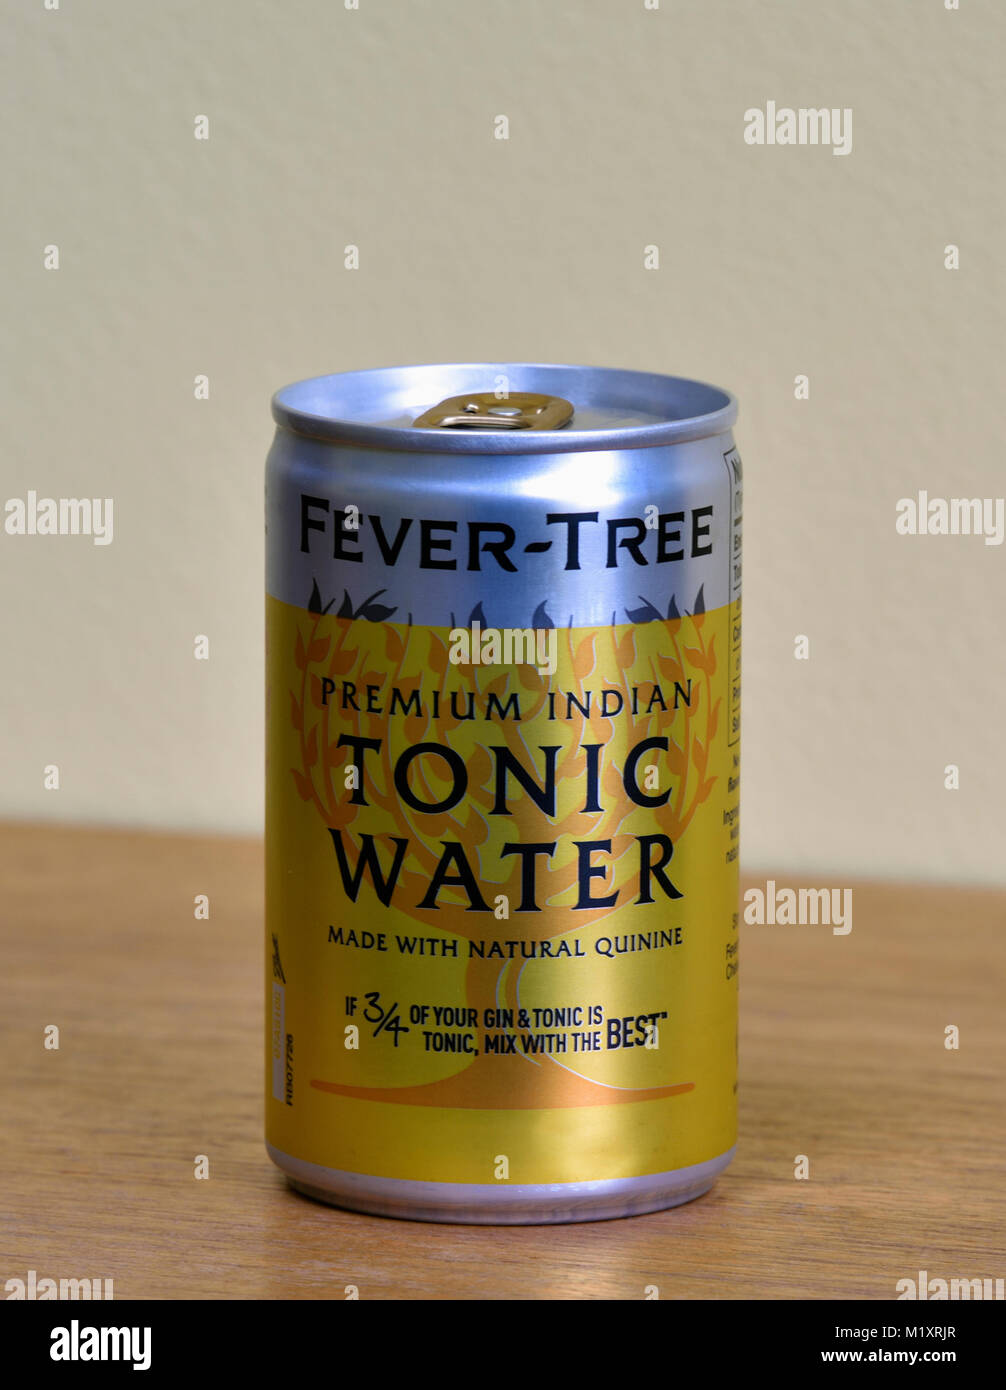 Possibile di febbre- Albero Premium Indian Tonic acqua. Realizzato con naturale chinina. Se 3/4 del vostro gin tonic è tonico, mescolare con i migliori. Foto Stock